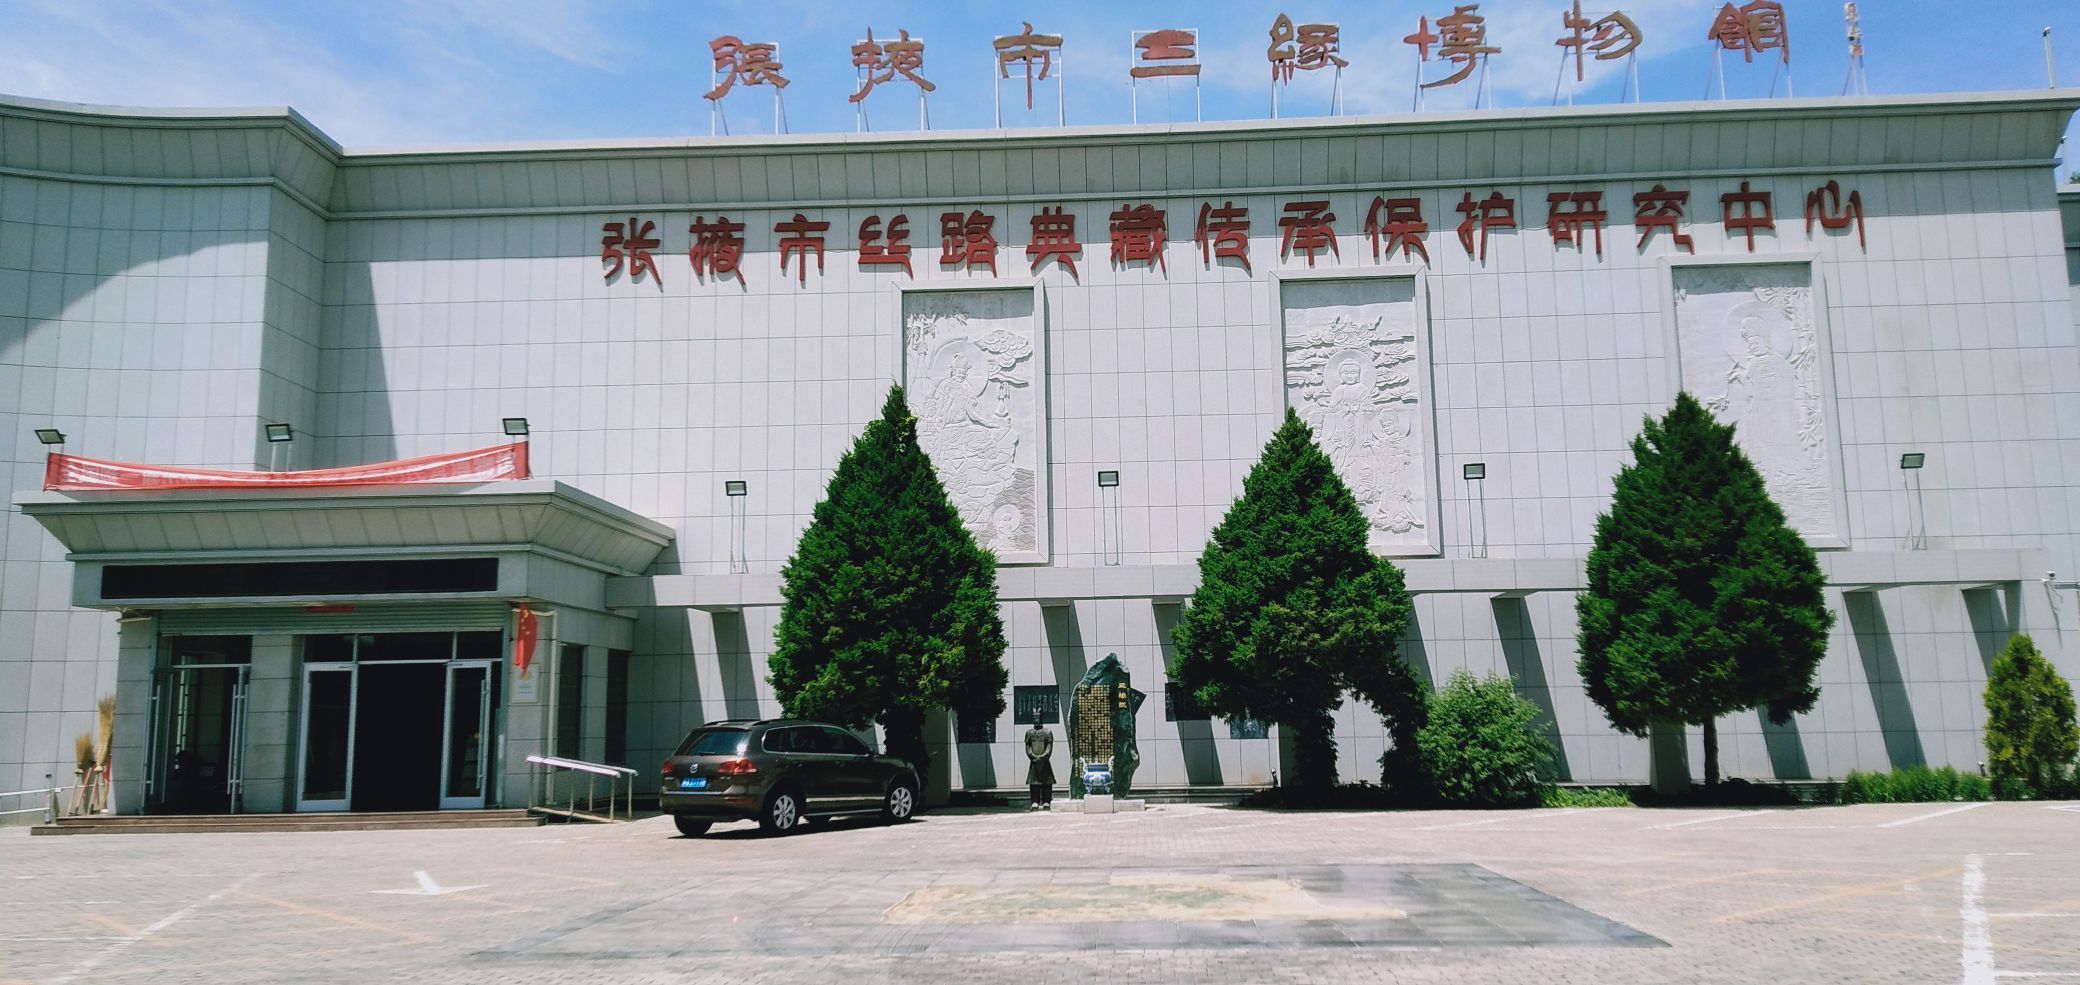 张掖市三缘博物馆位于甘州区大衙门街解放巷14号